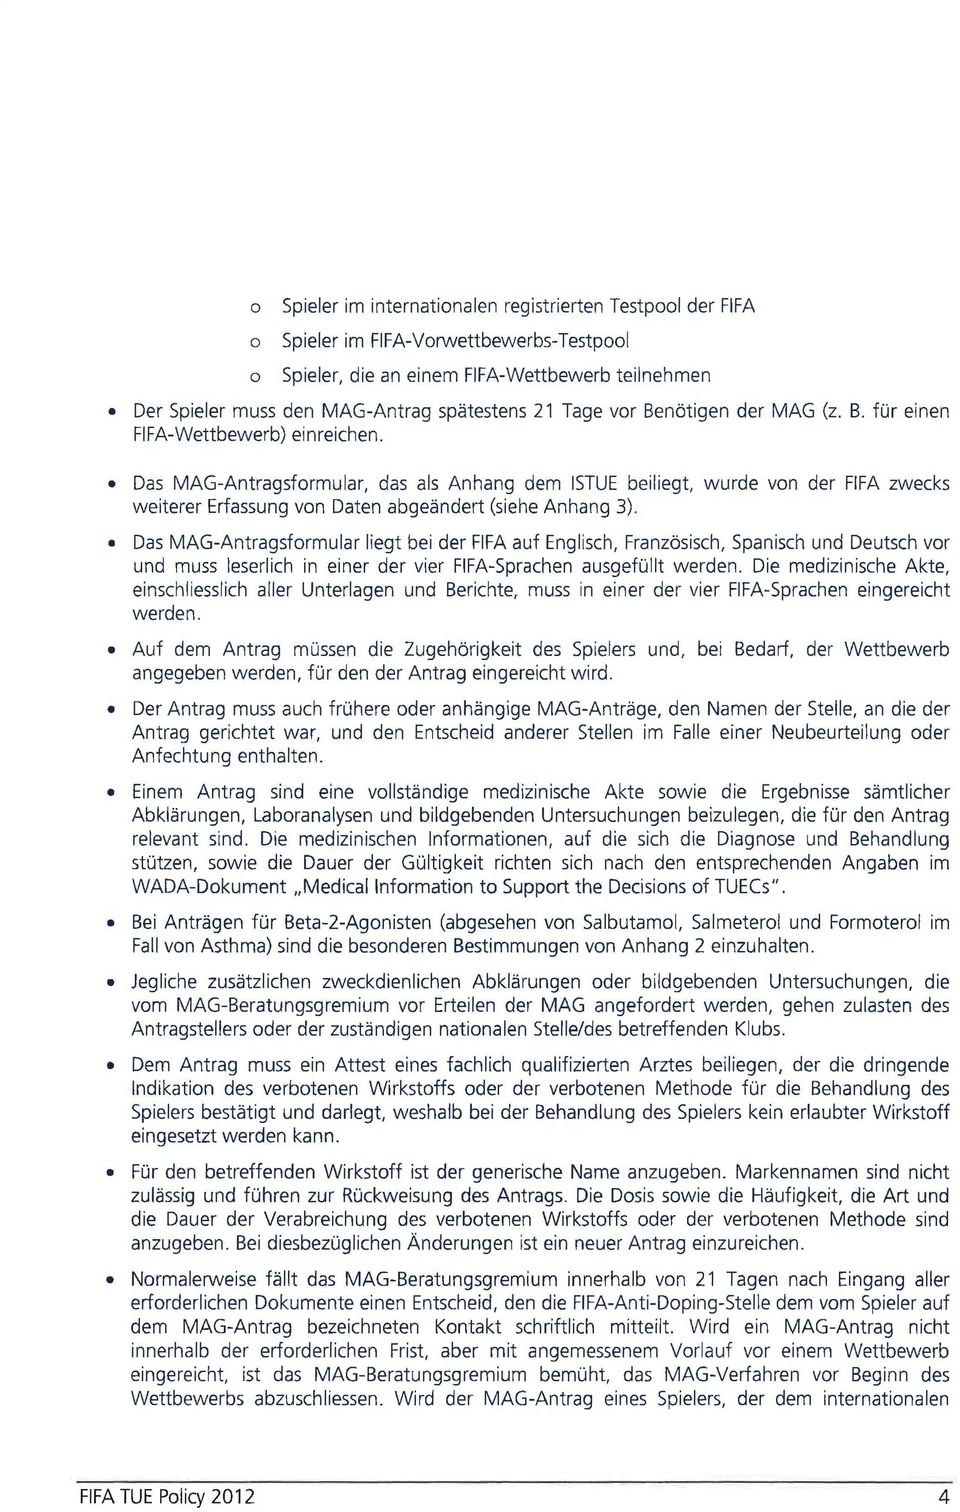 Das MAG-Antragsformular, das als Anhang dem ISTUE beiliegt, wurde von der FIFA zwecks weiterer Erfassung von Daten abgeändert (siehe Anhang 3).